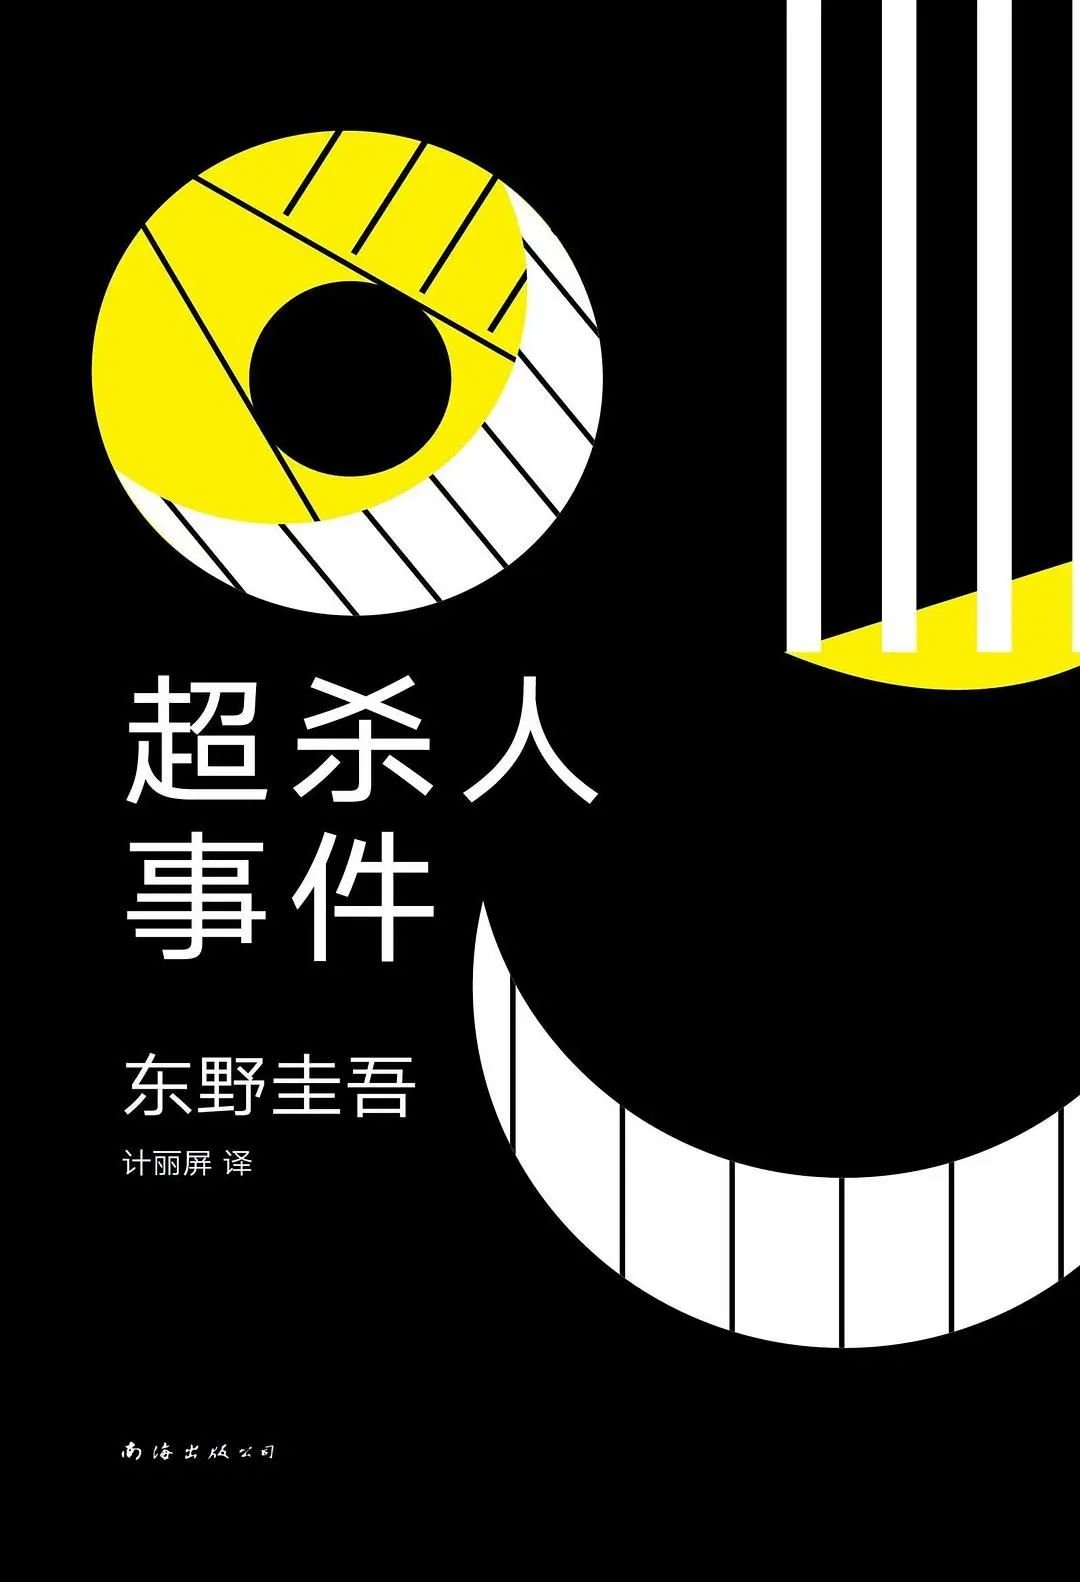 《超杀人事件》（原版名为《超·杀人事件》），东野圭吾著，新经典｜南海出版公司2019年7月。